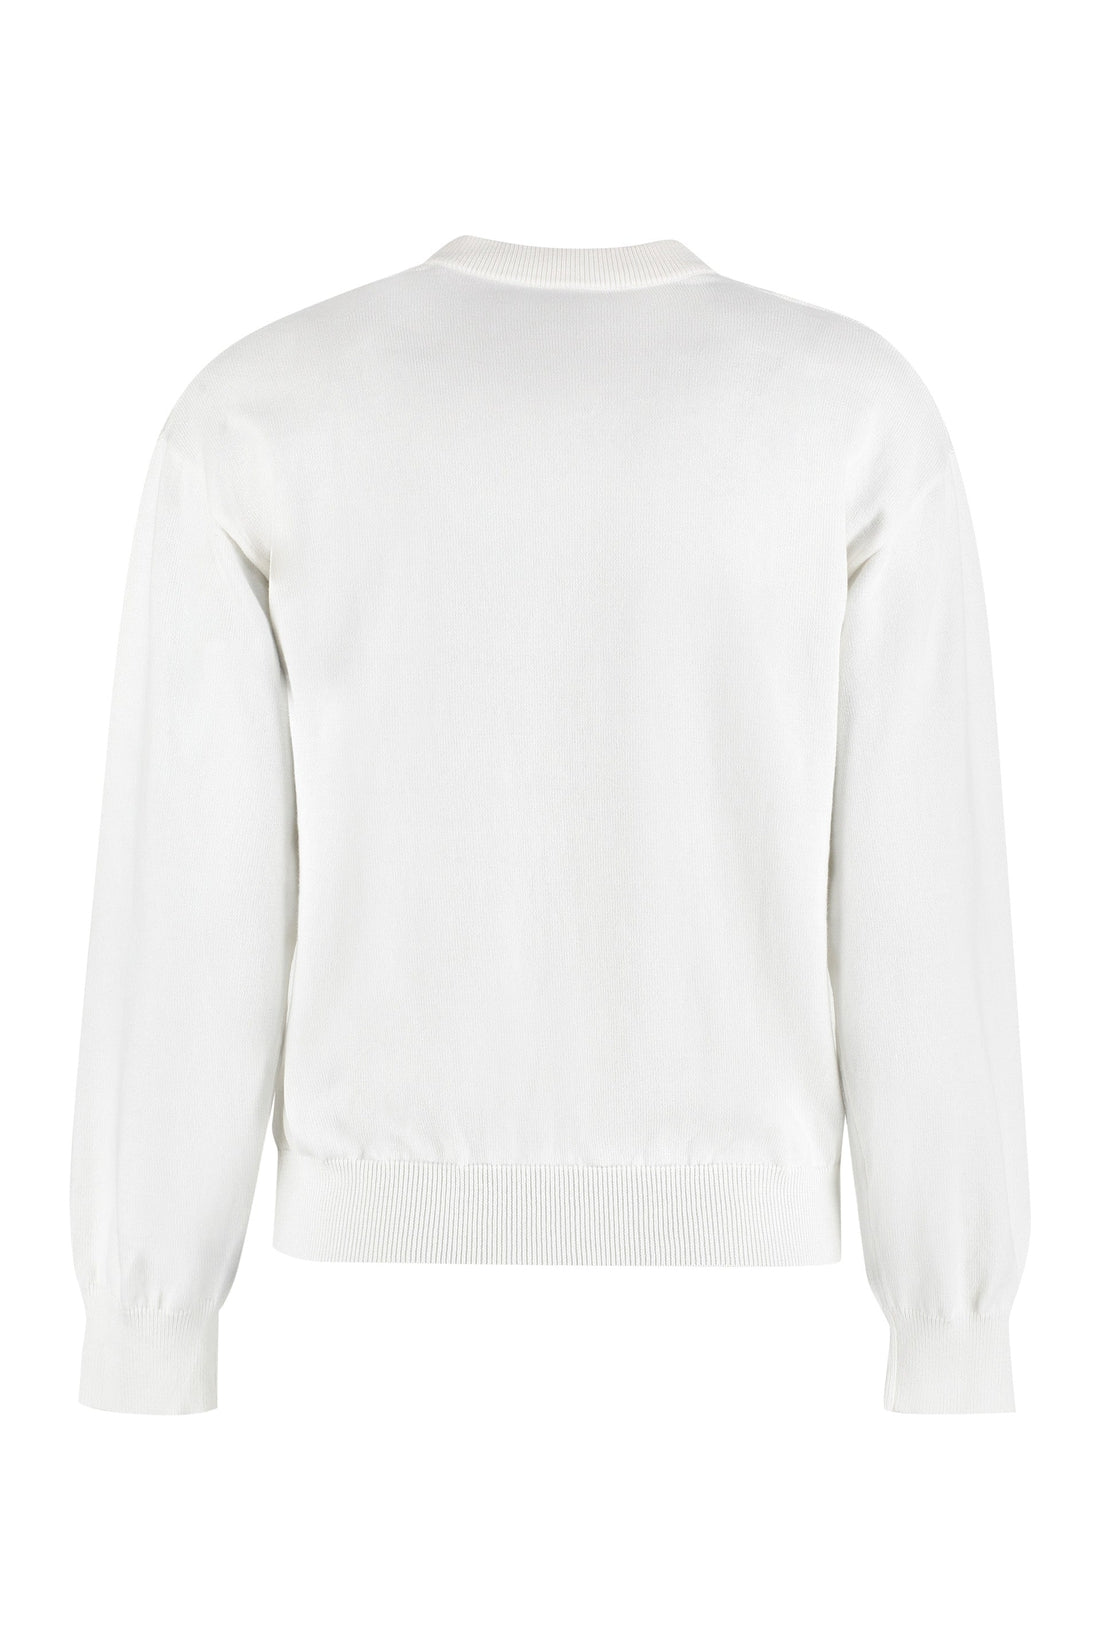 Boutique Moschino-OUTLET-SALE-Cotton-cashmere blend crew-neck pullover-ARCHIVIST